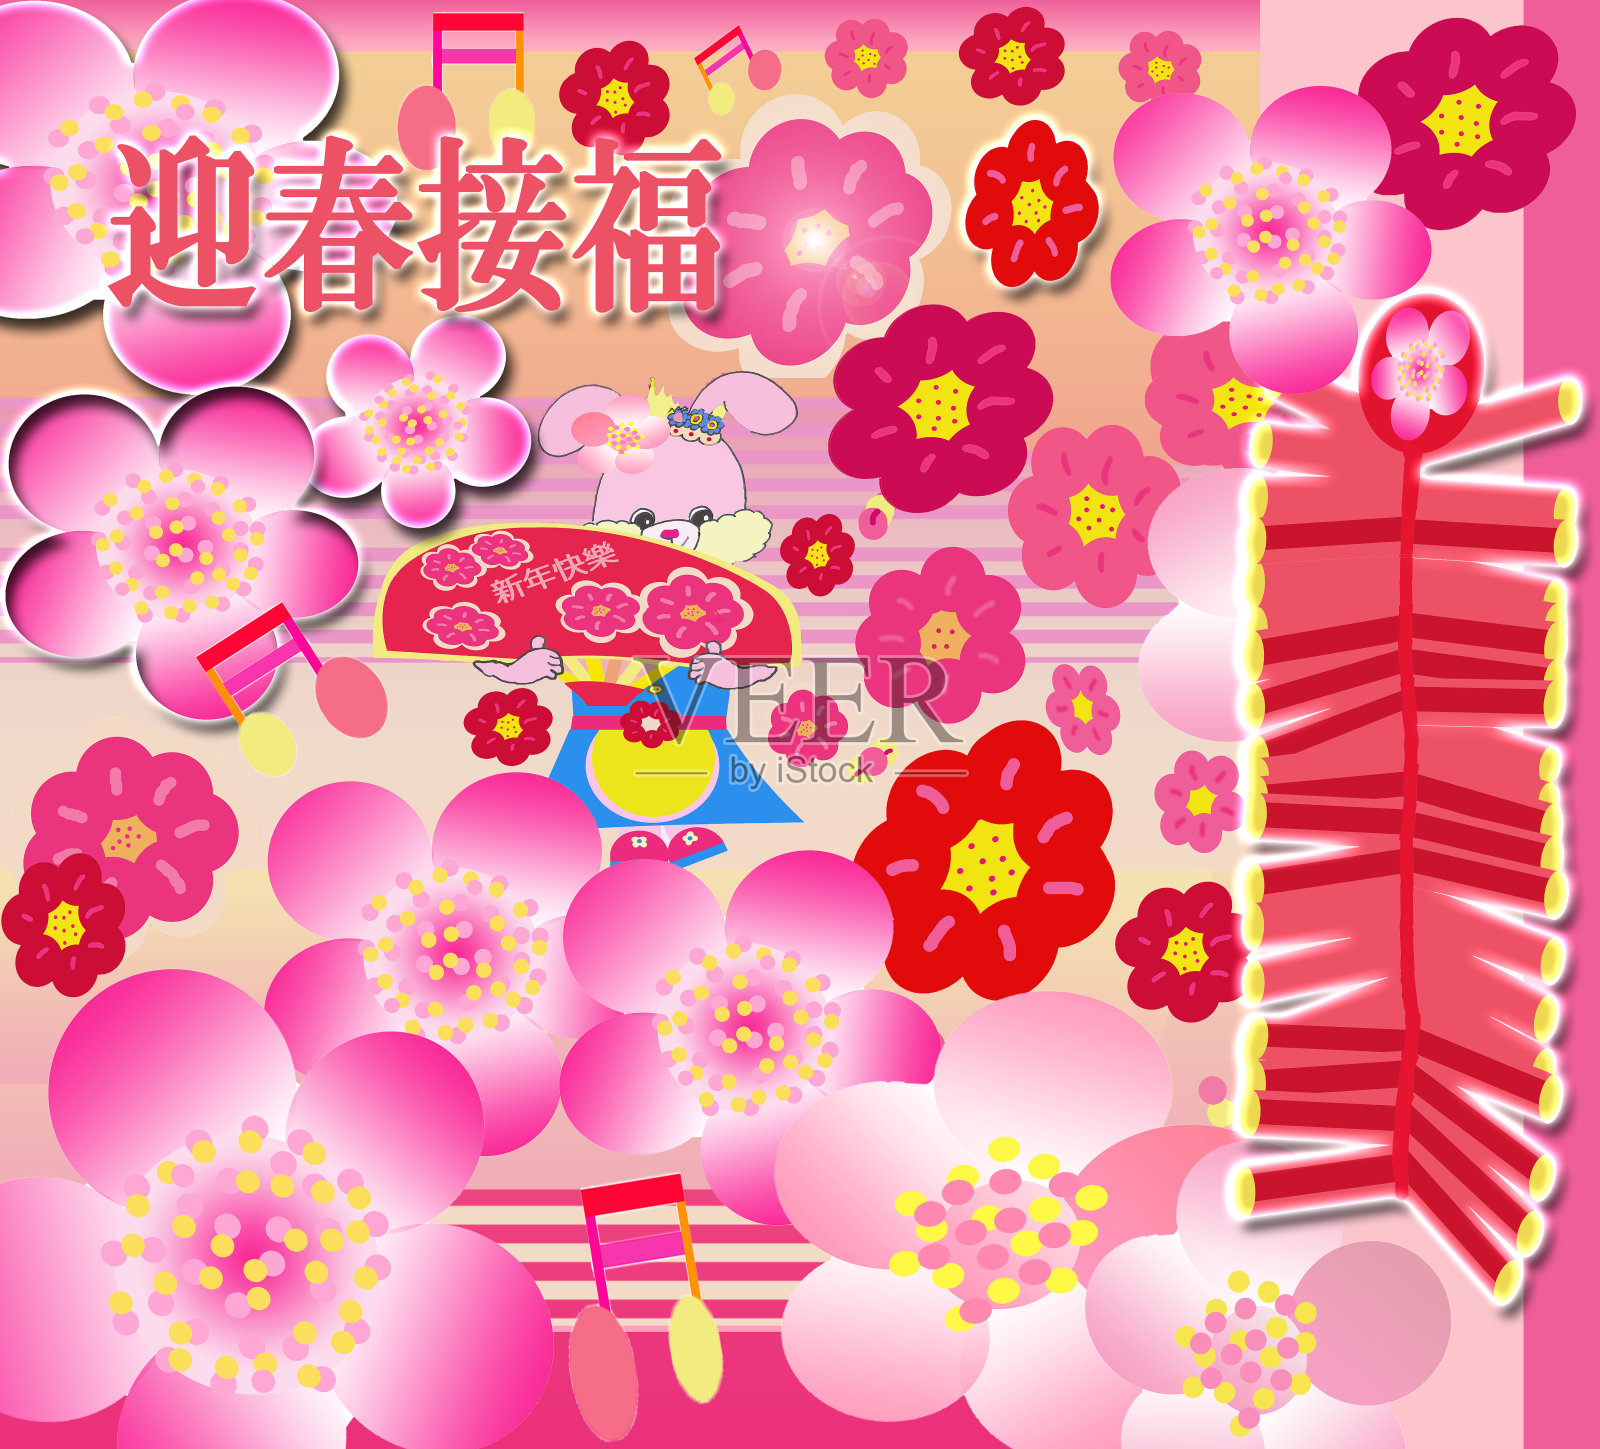 明亮甜蜜的粉红色卡通中国新年祝福兔兔抱扇粉红色的红色梅花背景插图2022插画图片素材